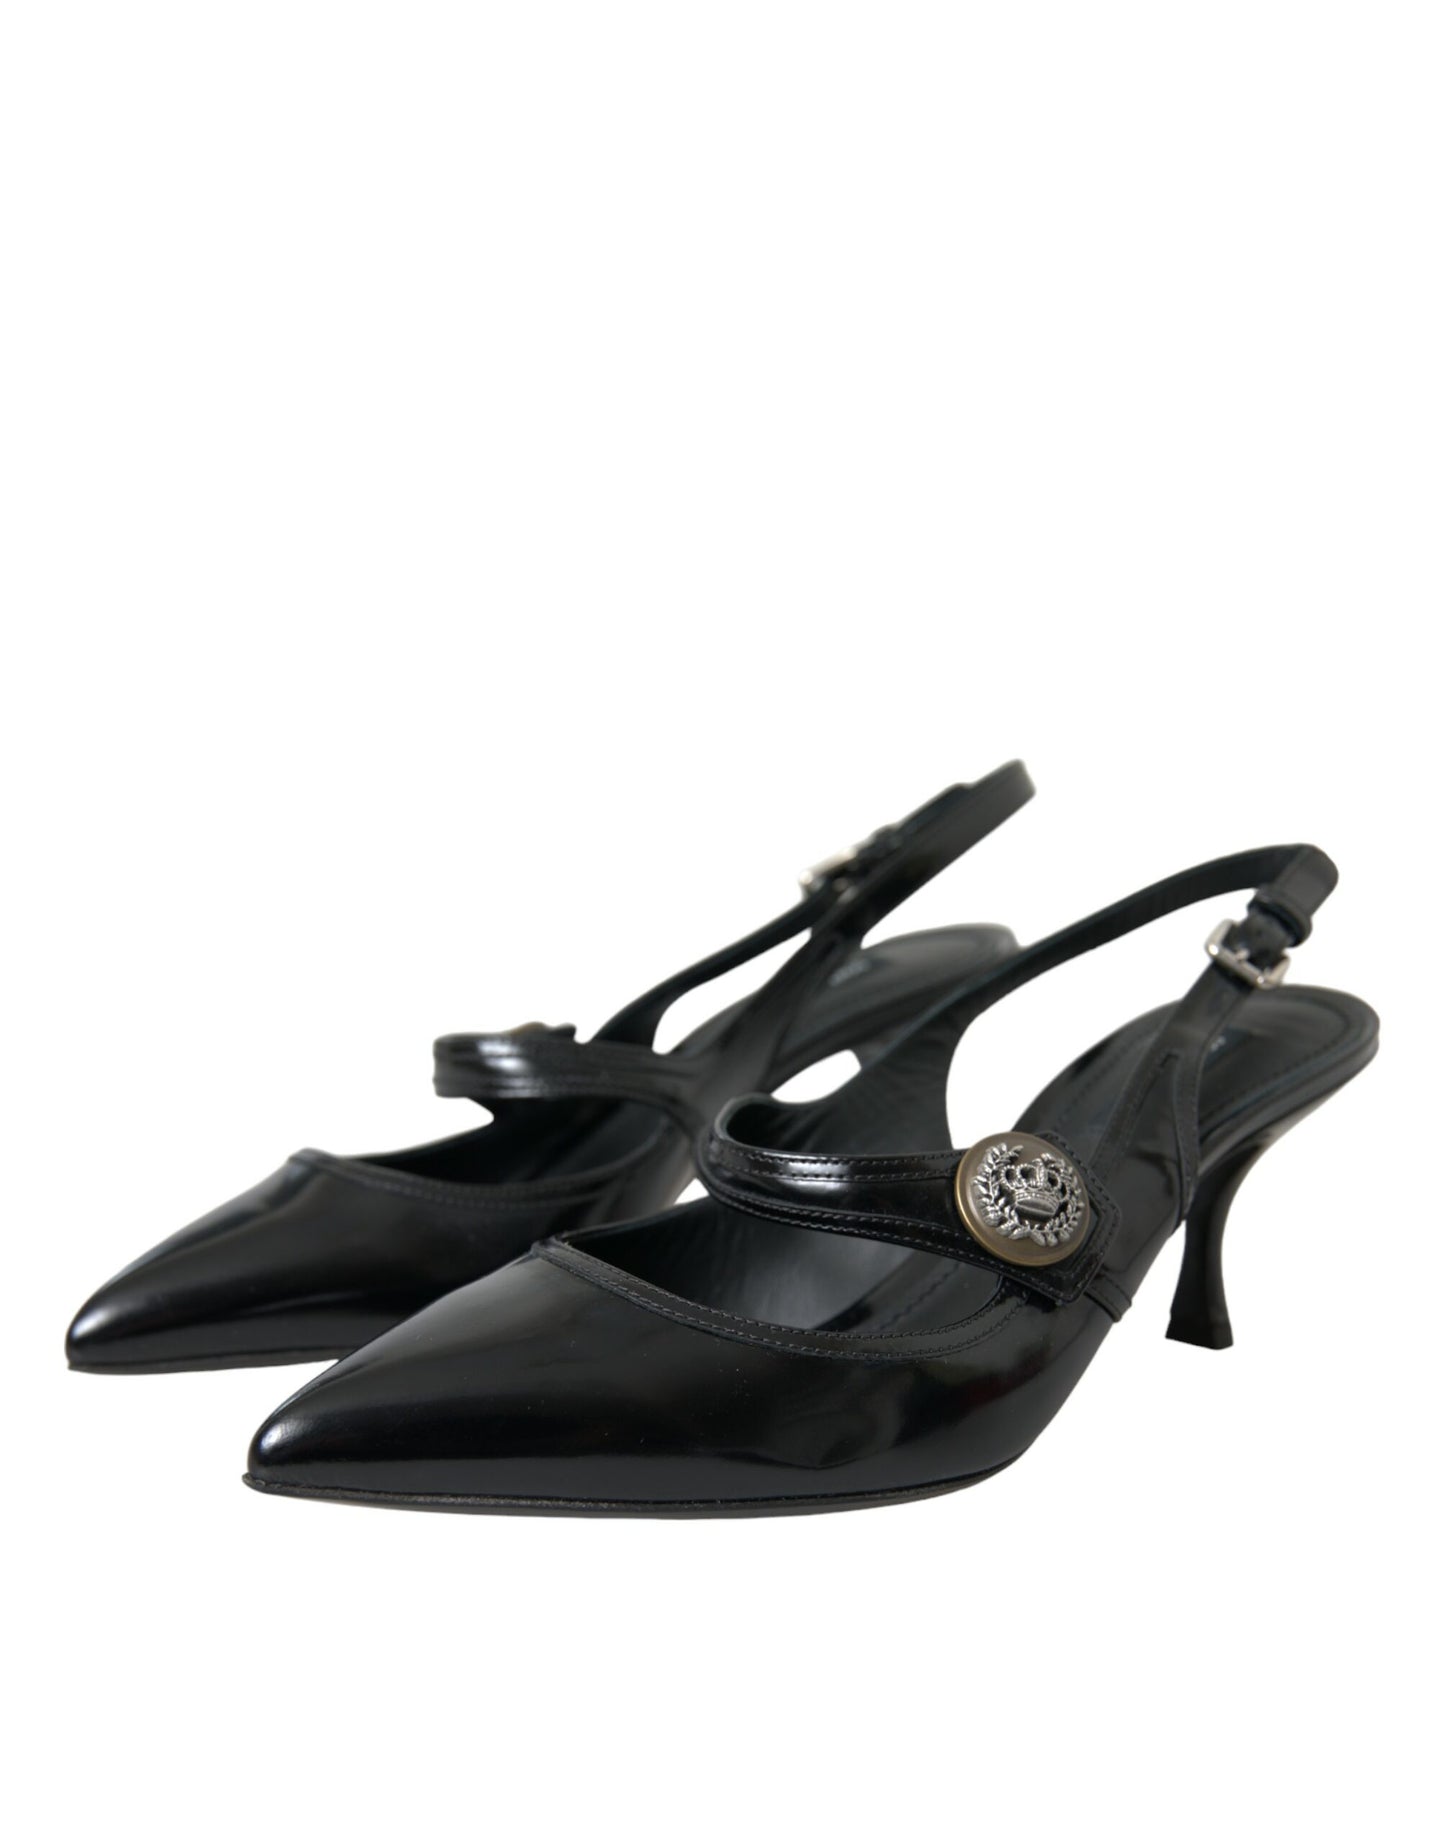 حذاء دولتشي آند غابانا مصنوع من الجلد الأسود مزين بأحذية خفيفة